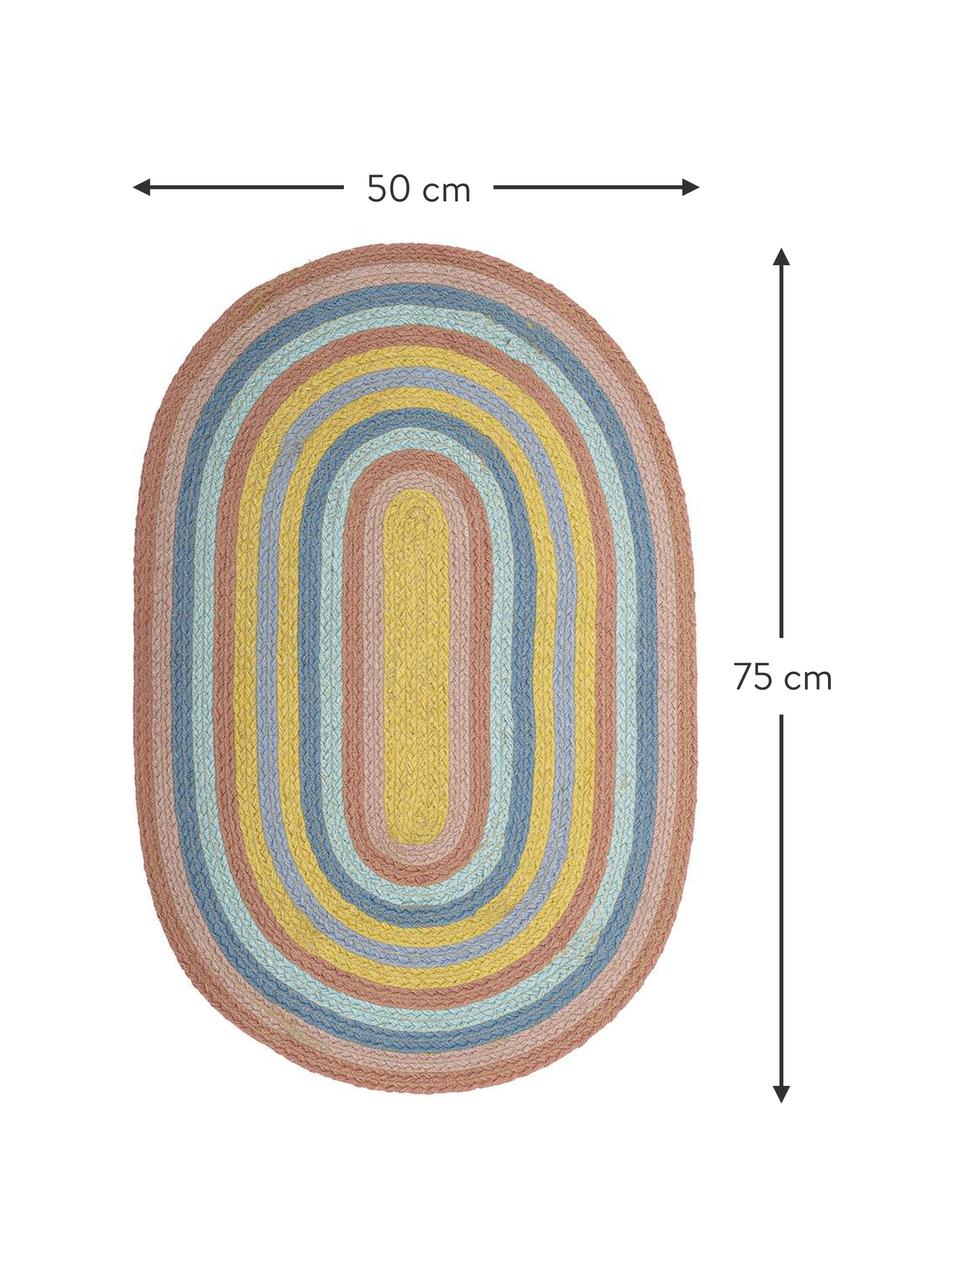 Owalny dywan z juty Ralia, 100% juta, Wielobarwny, S 75 x G 50 cm